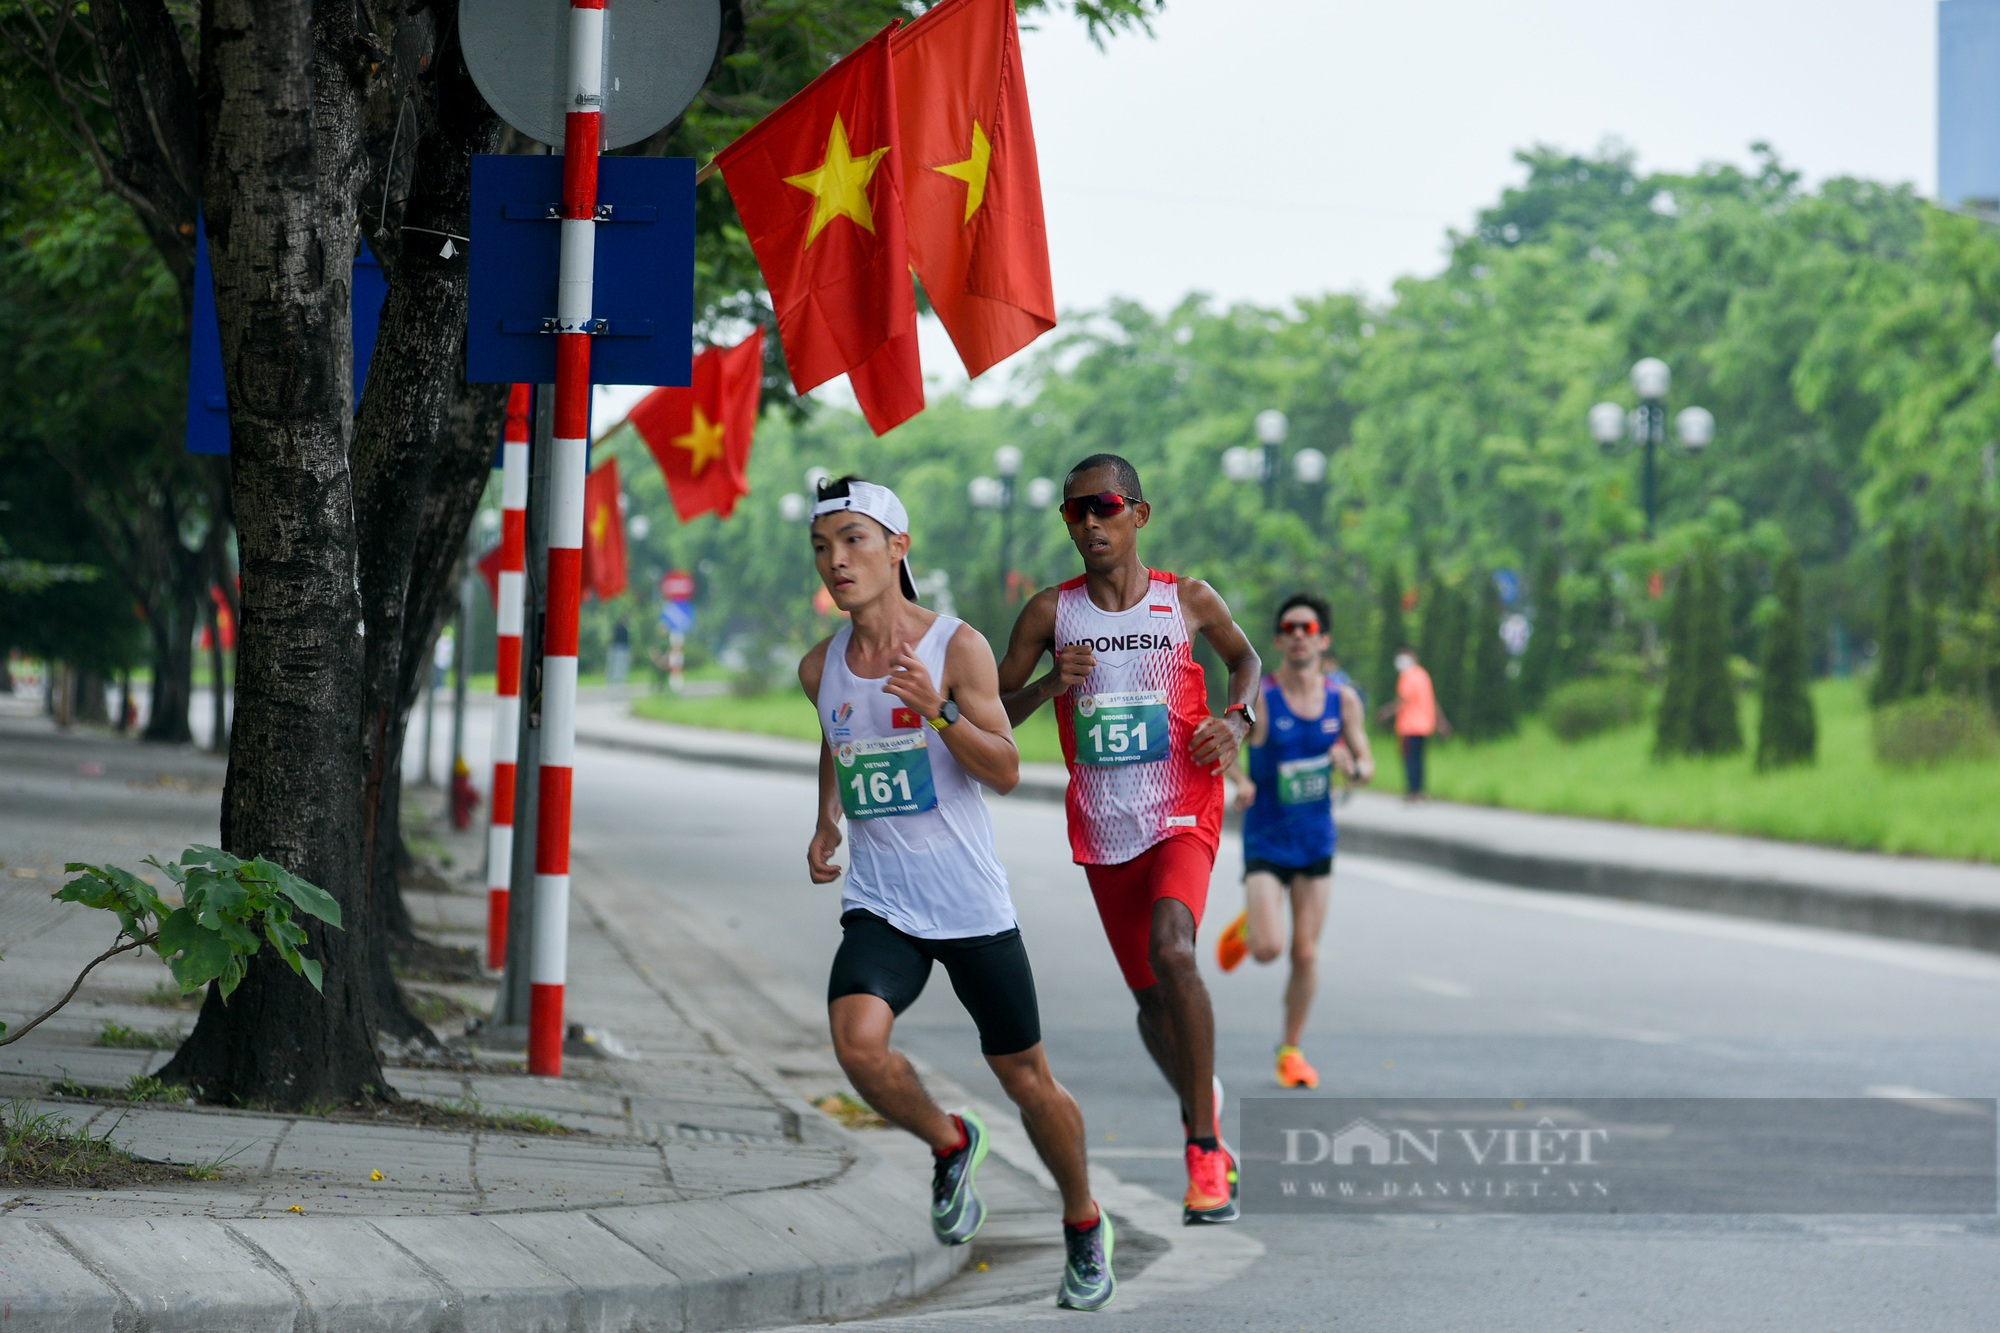 Hoàng Nguyên Thanh giành tấm HCV lịch sử cho marathon Việt Nam sau khi vượt qua 42,195km - Ảnh 2.